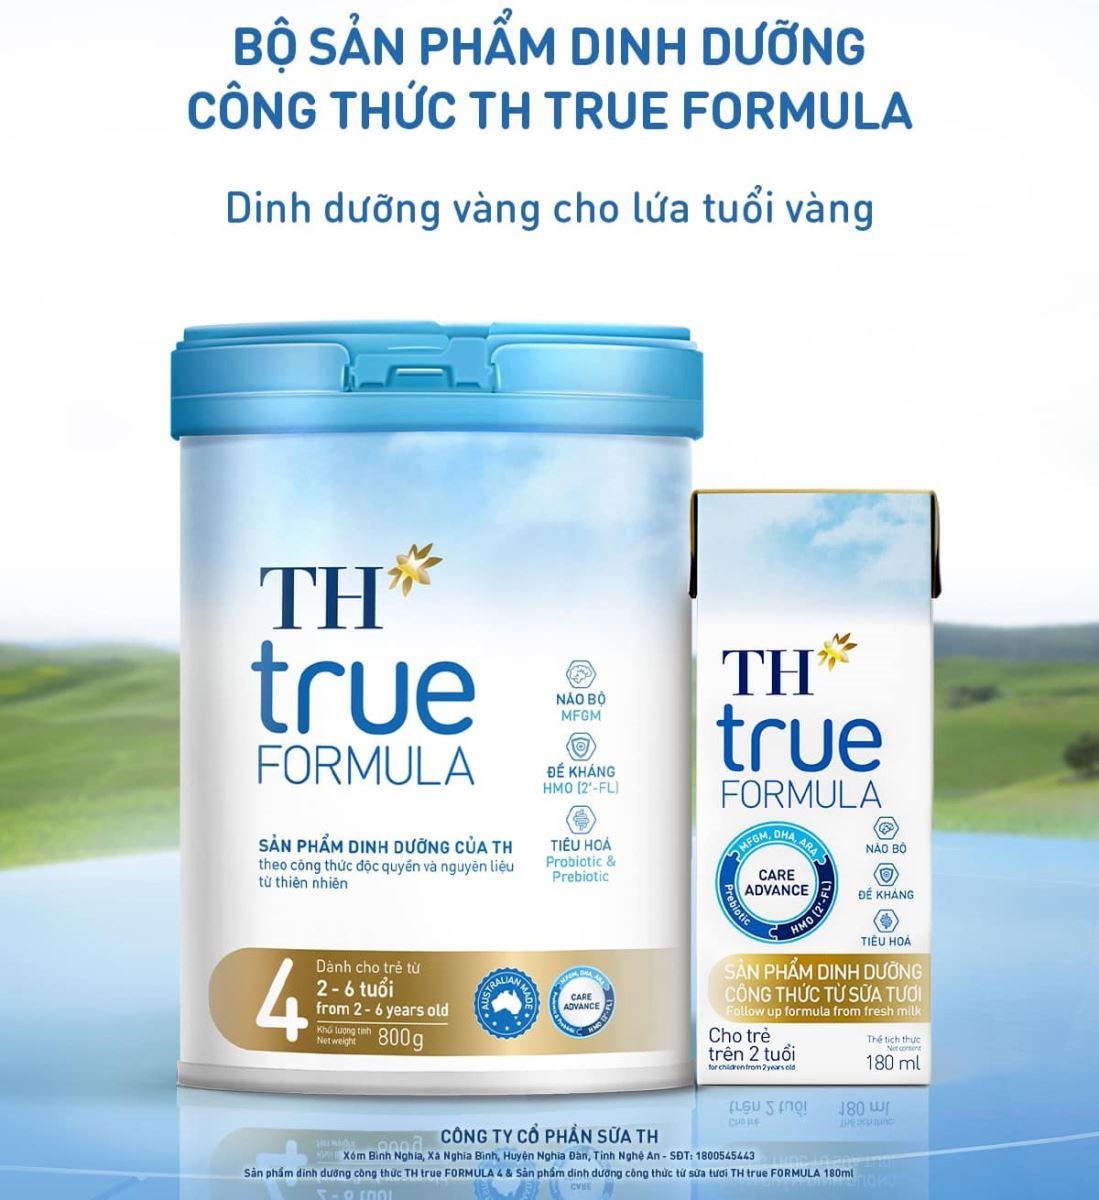 Tổng hợp các dòng sữa TH true Formula phù hợp cho từng độ tuổi của bé tốt nhất hiện nay